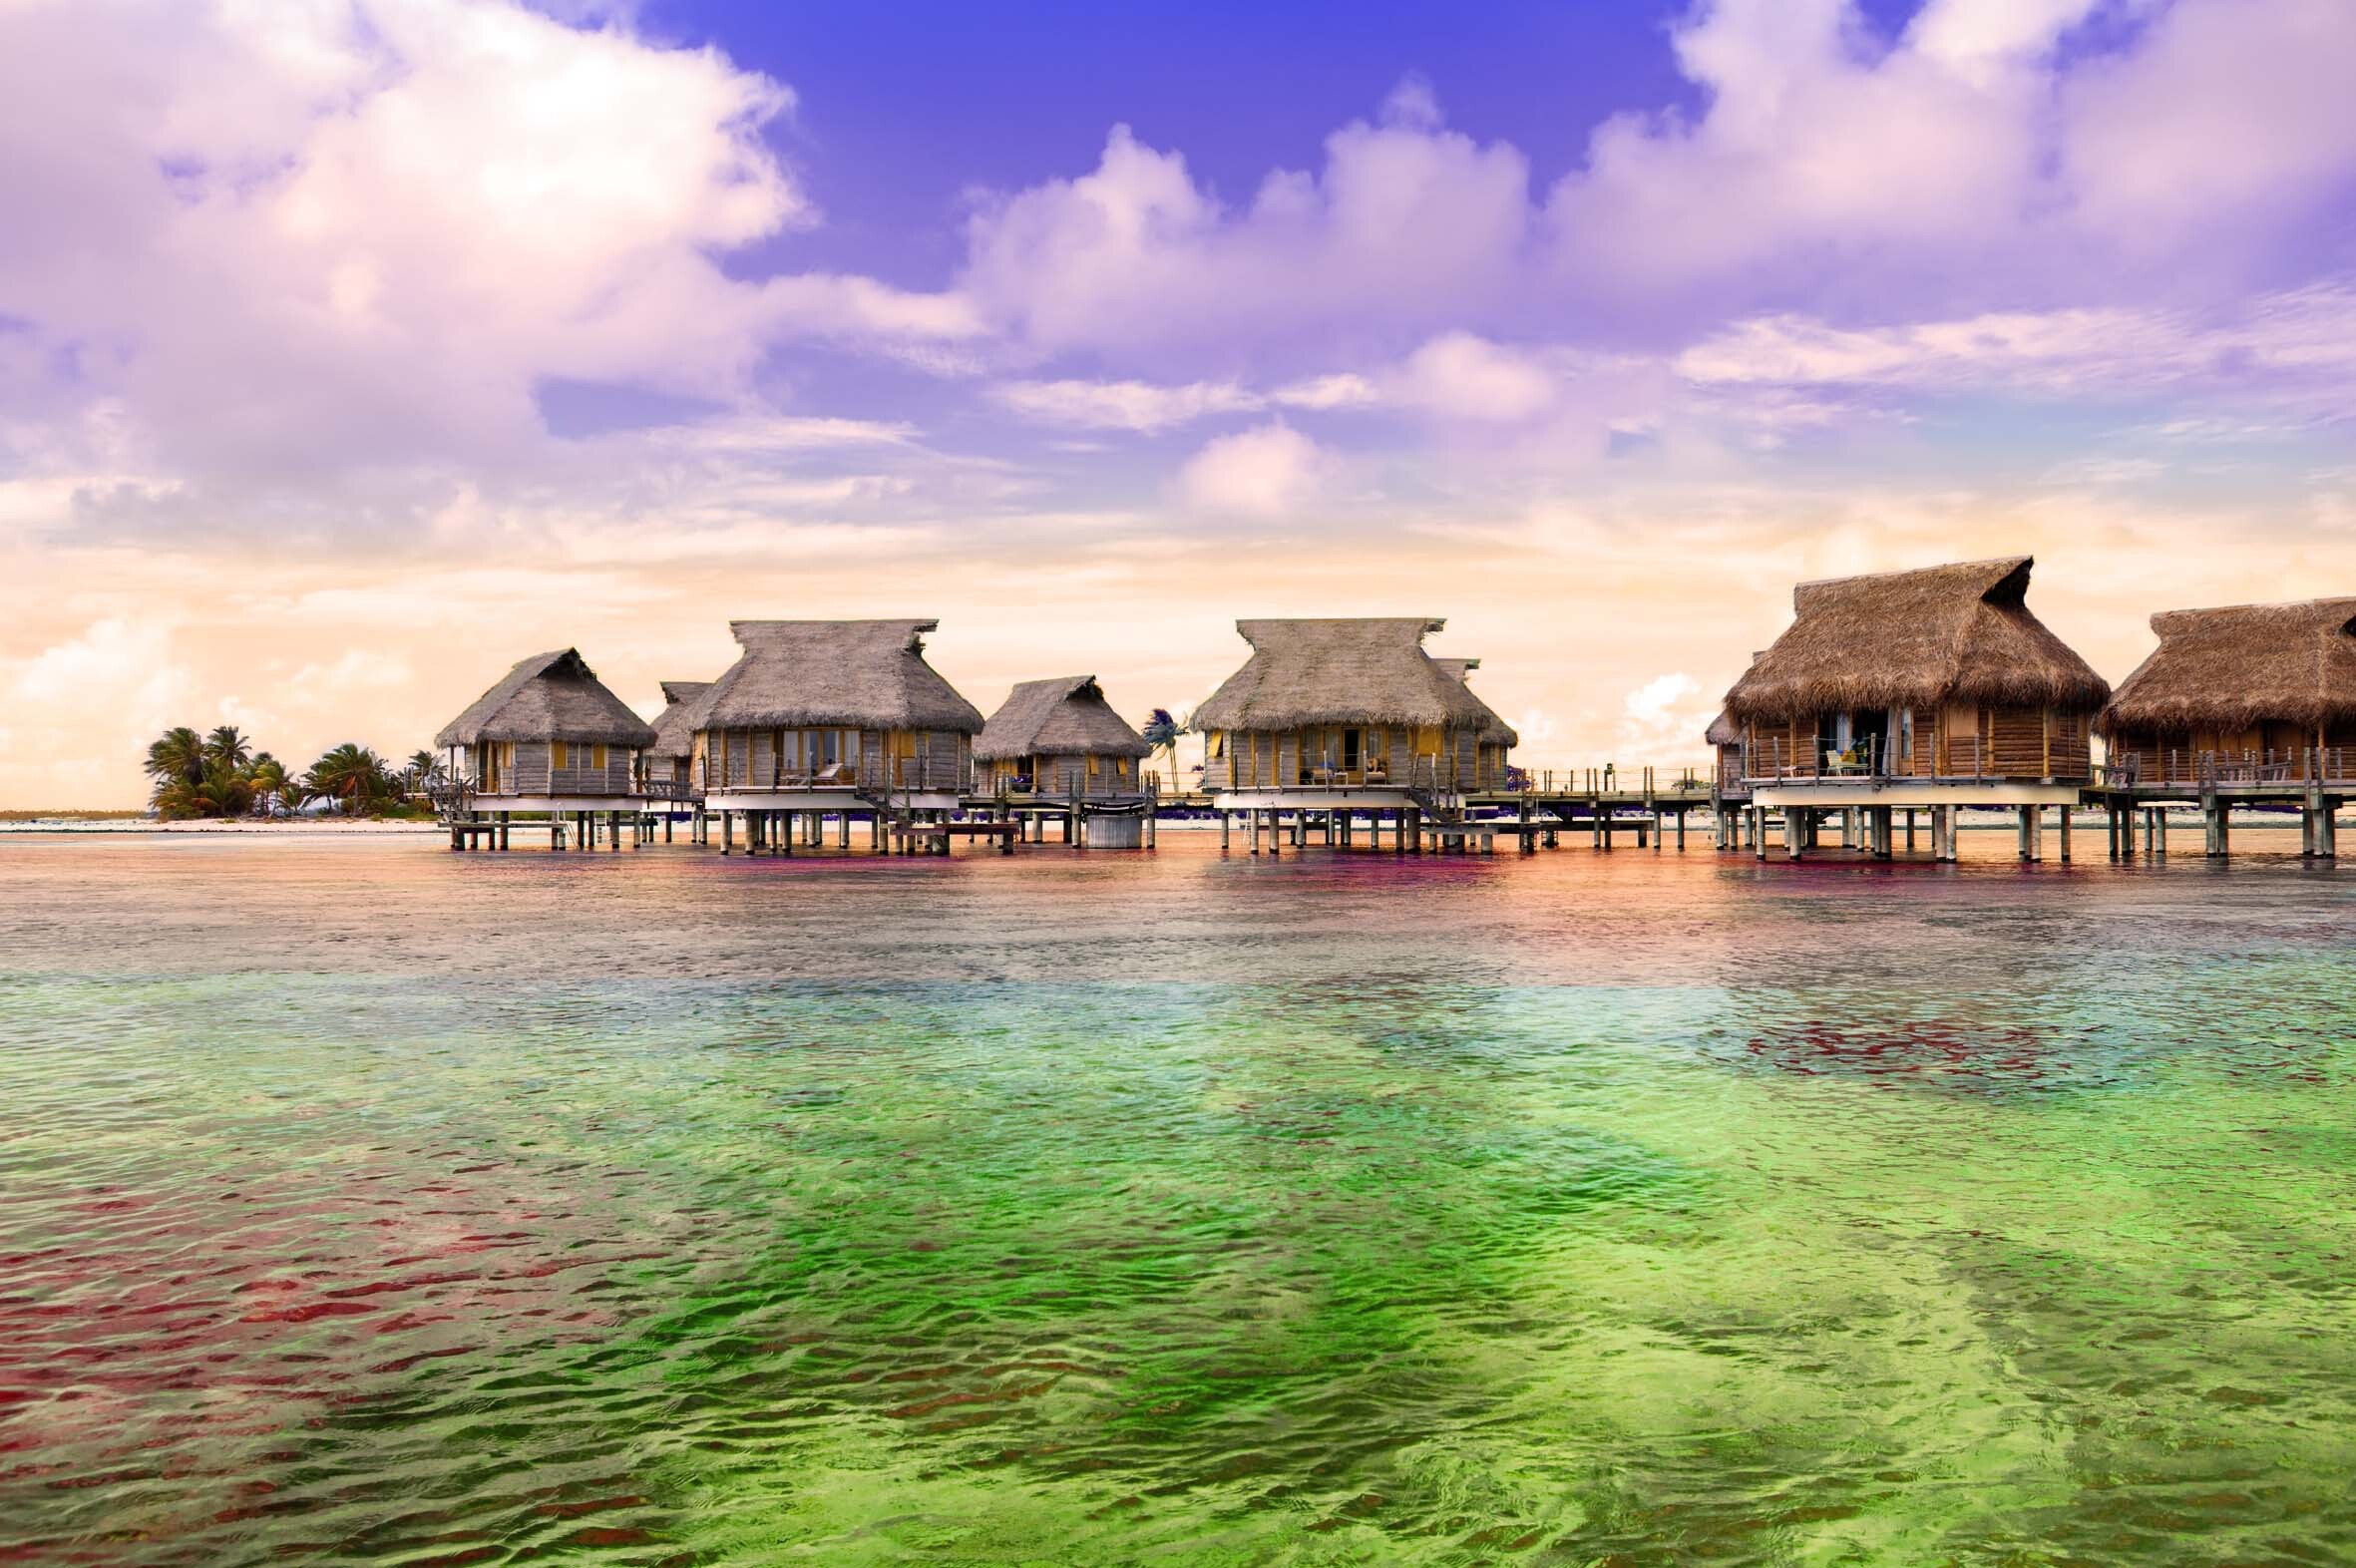 Alojarse en un hotel de lujo o en un bungalow sobre el agua en el entorno natural de la Polinesia, es toda una experiencia.